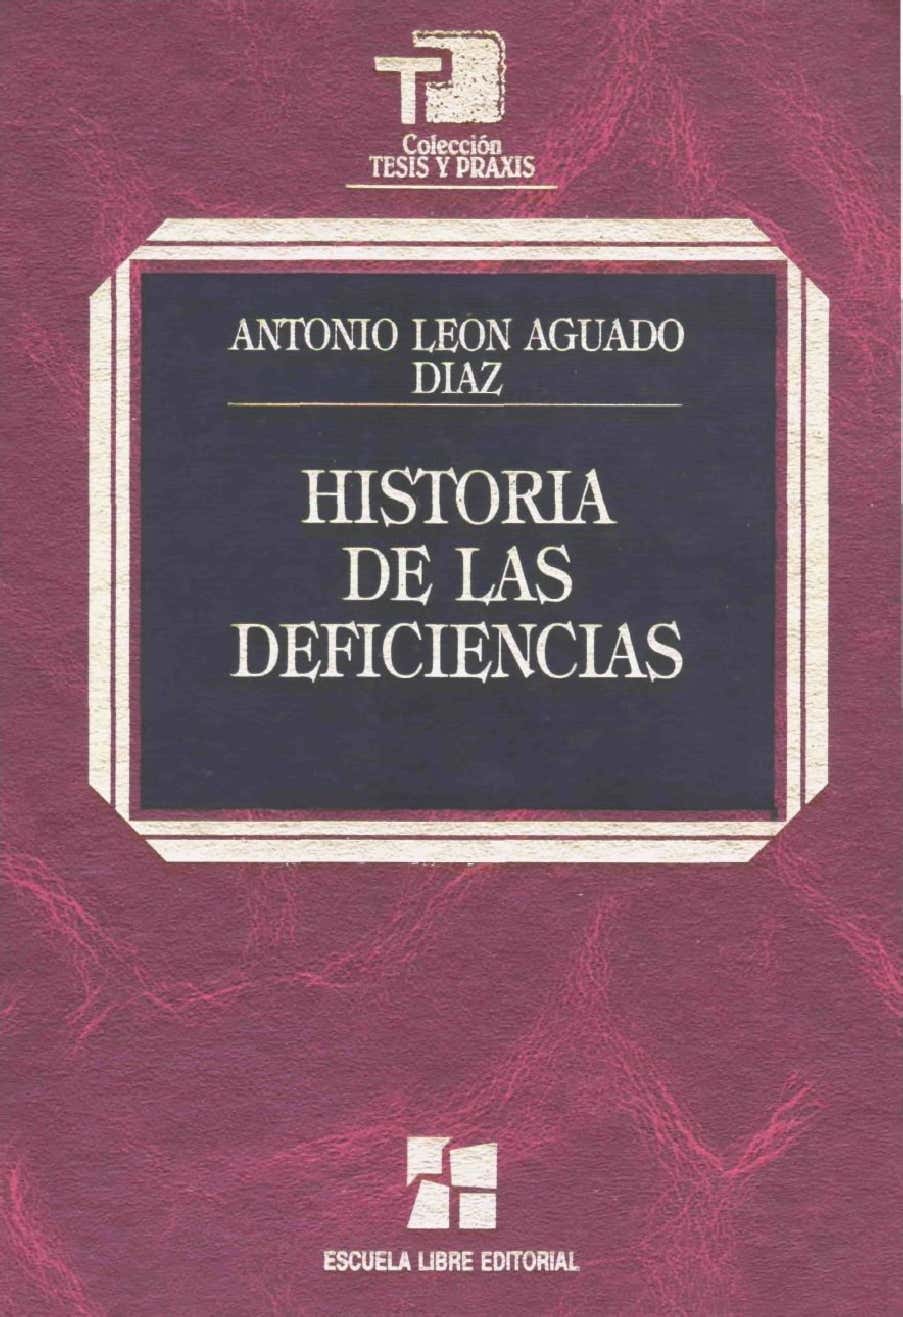 Imagen de portada del libro Historia de las deficiencias